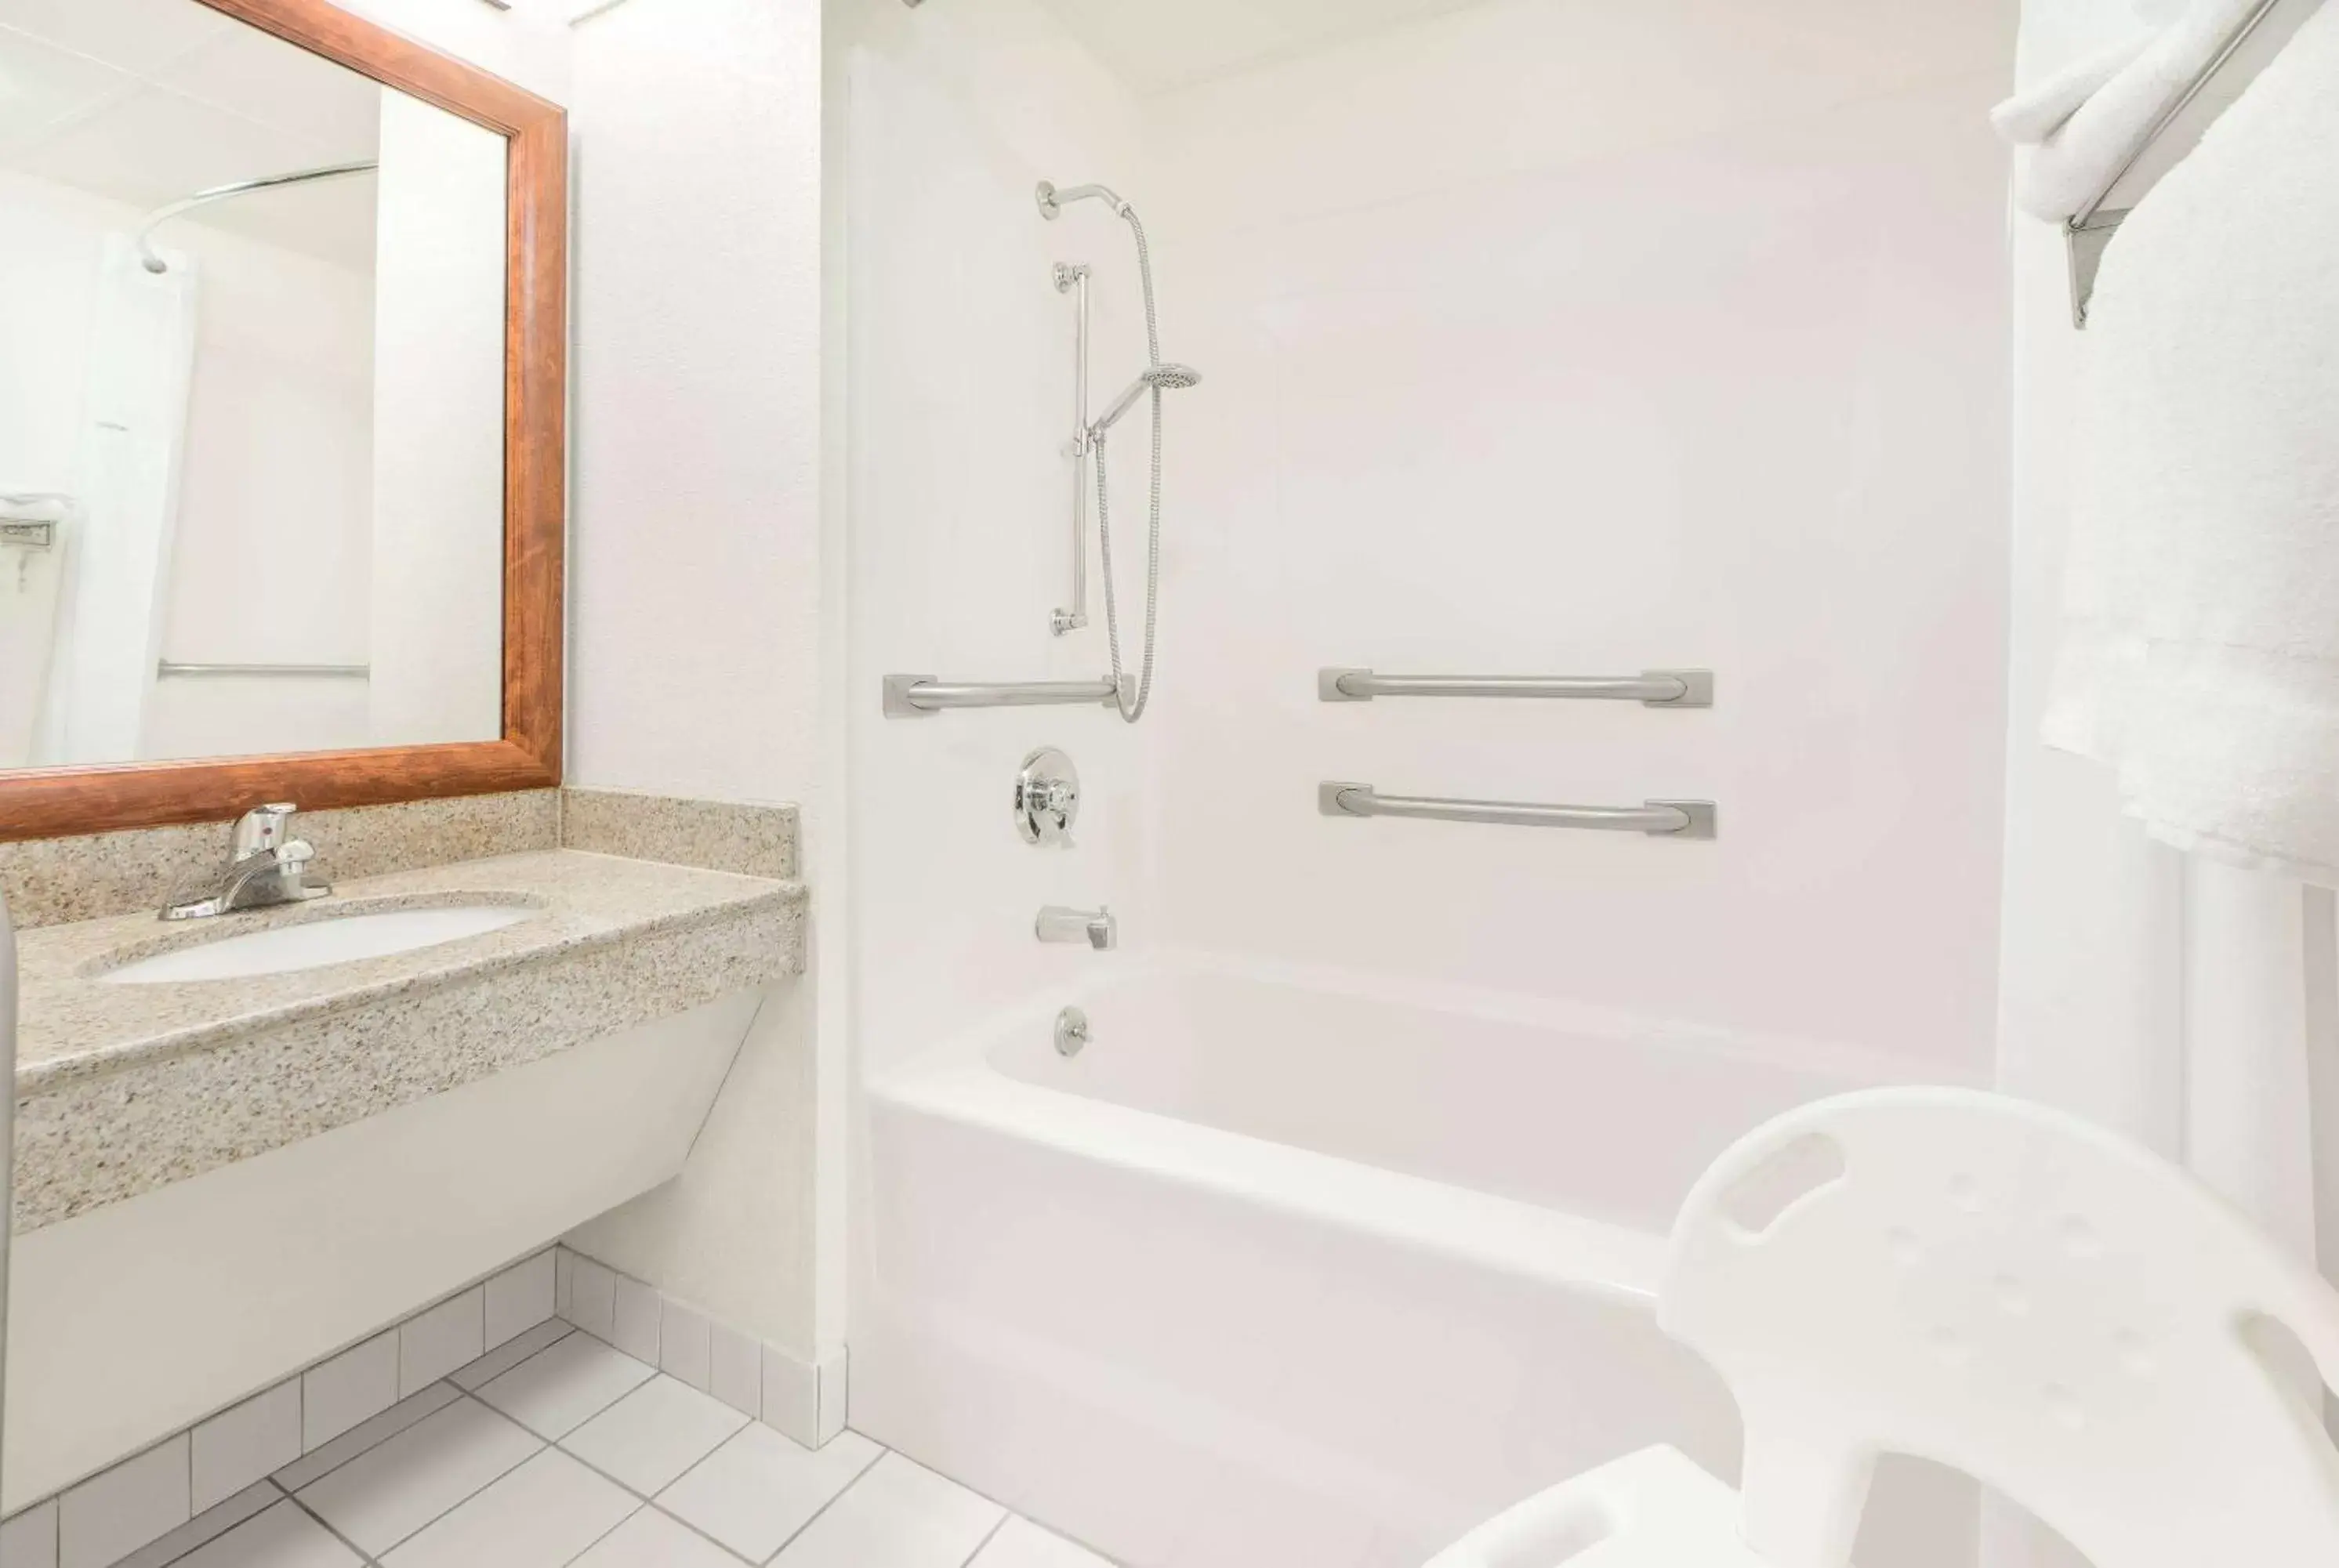 Shower, Bathroom in Baymont by Wyndham Springfield South Hwy 65